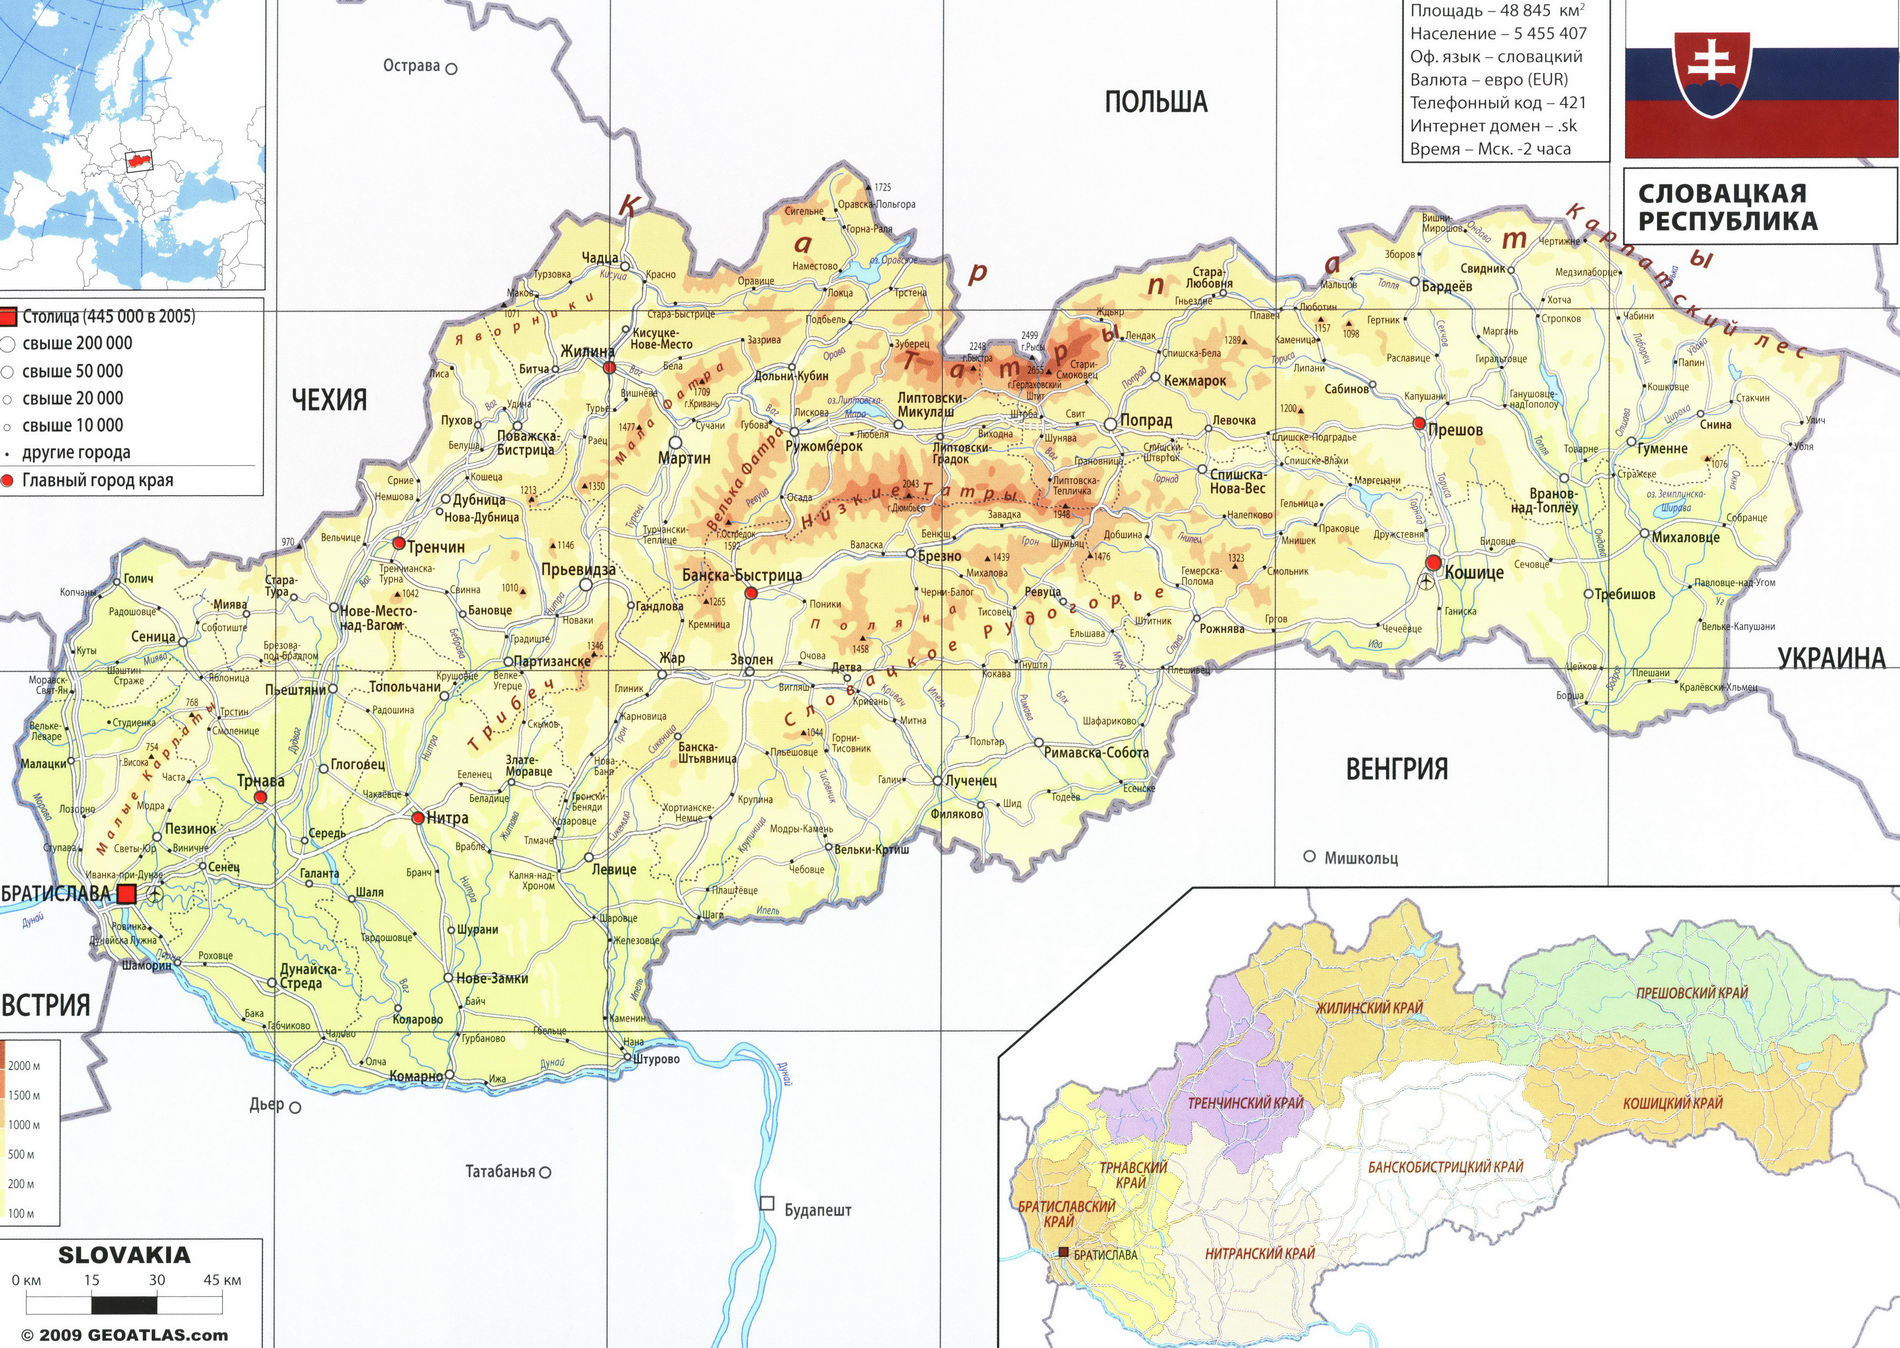 Словакия карта на русском языке, географическое описание страны - Атлас мира